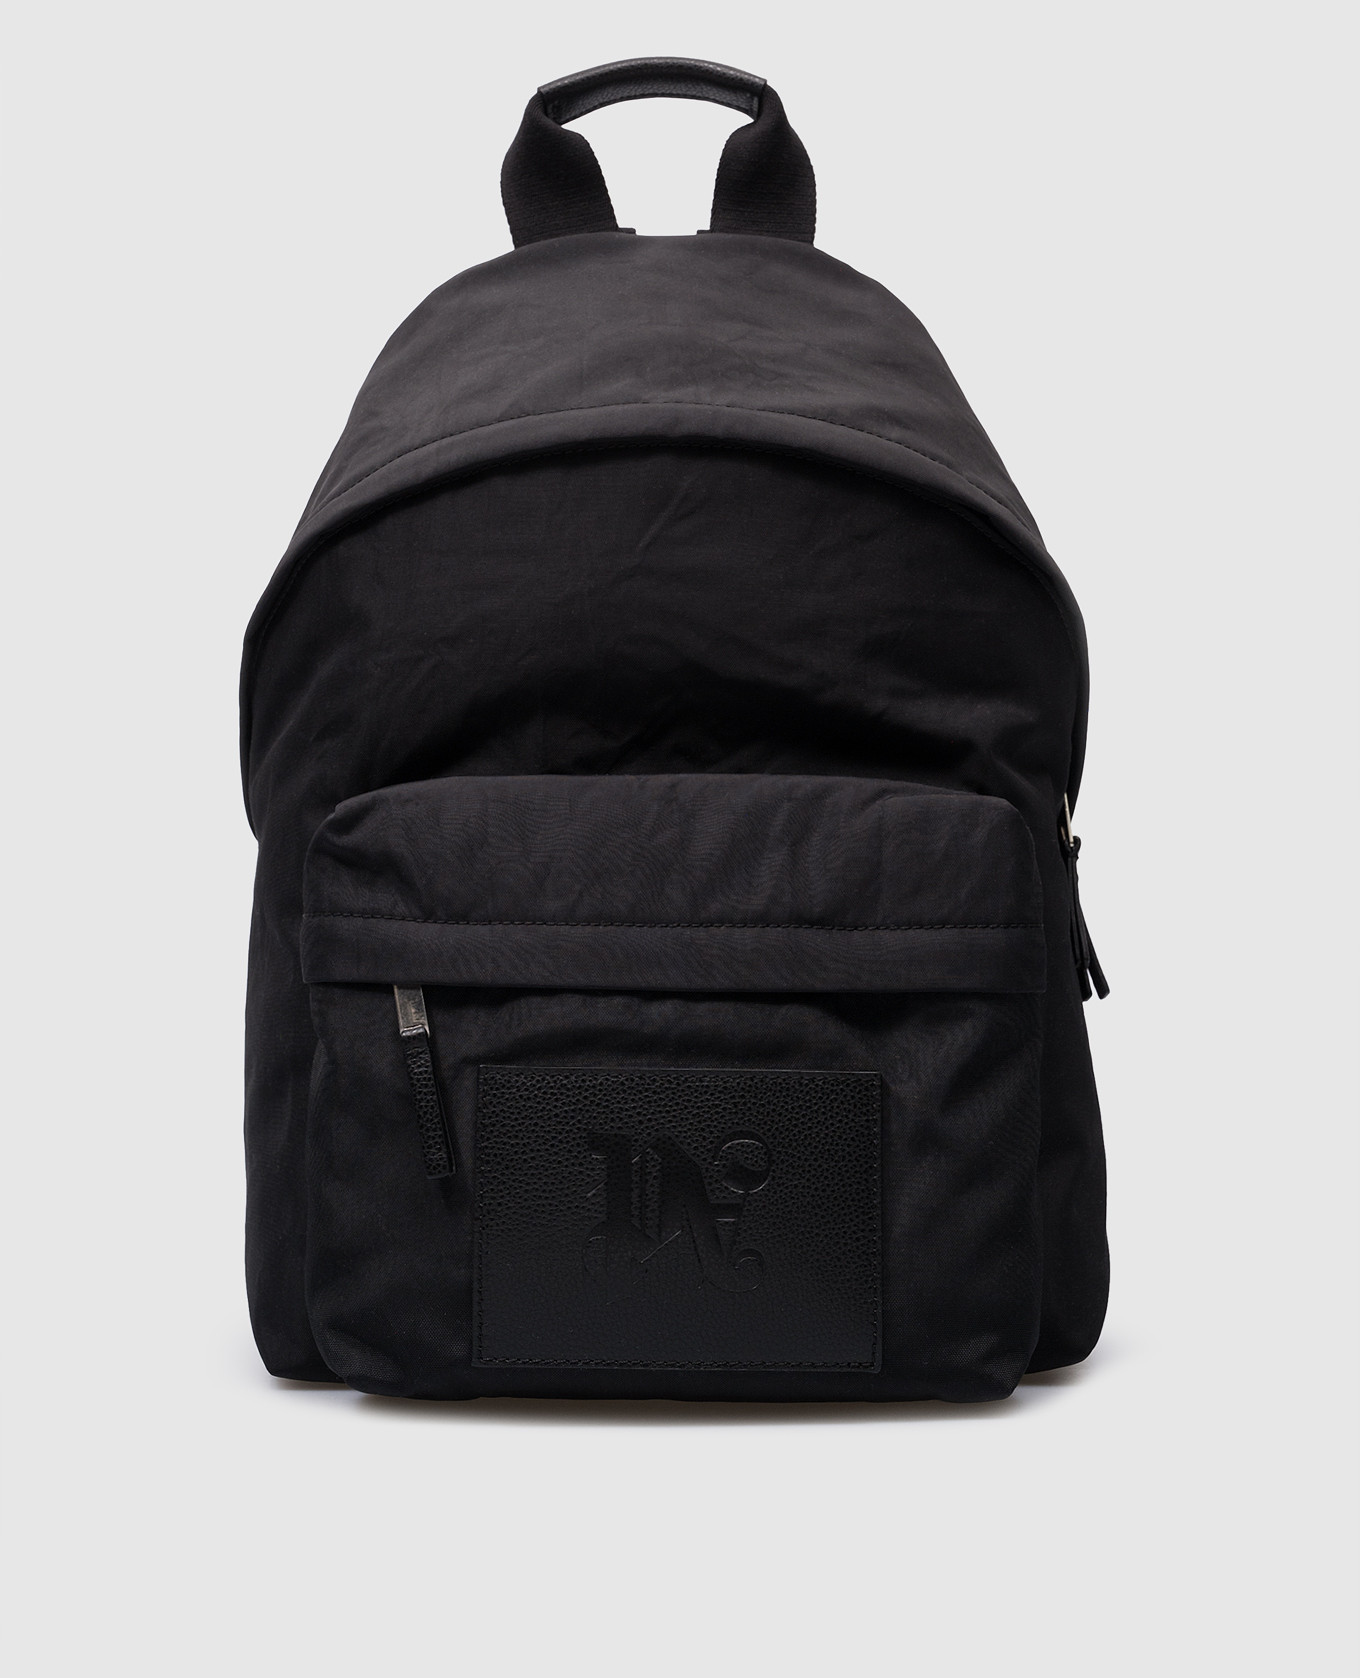 Черный рюкзак с тиснением логотипа монограммы.